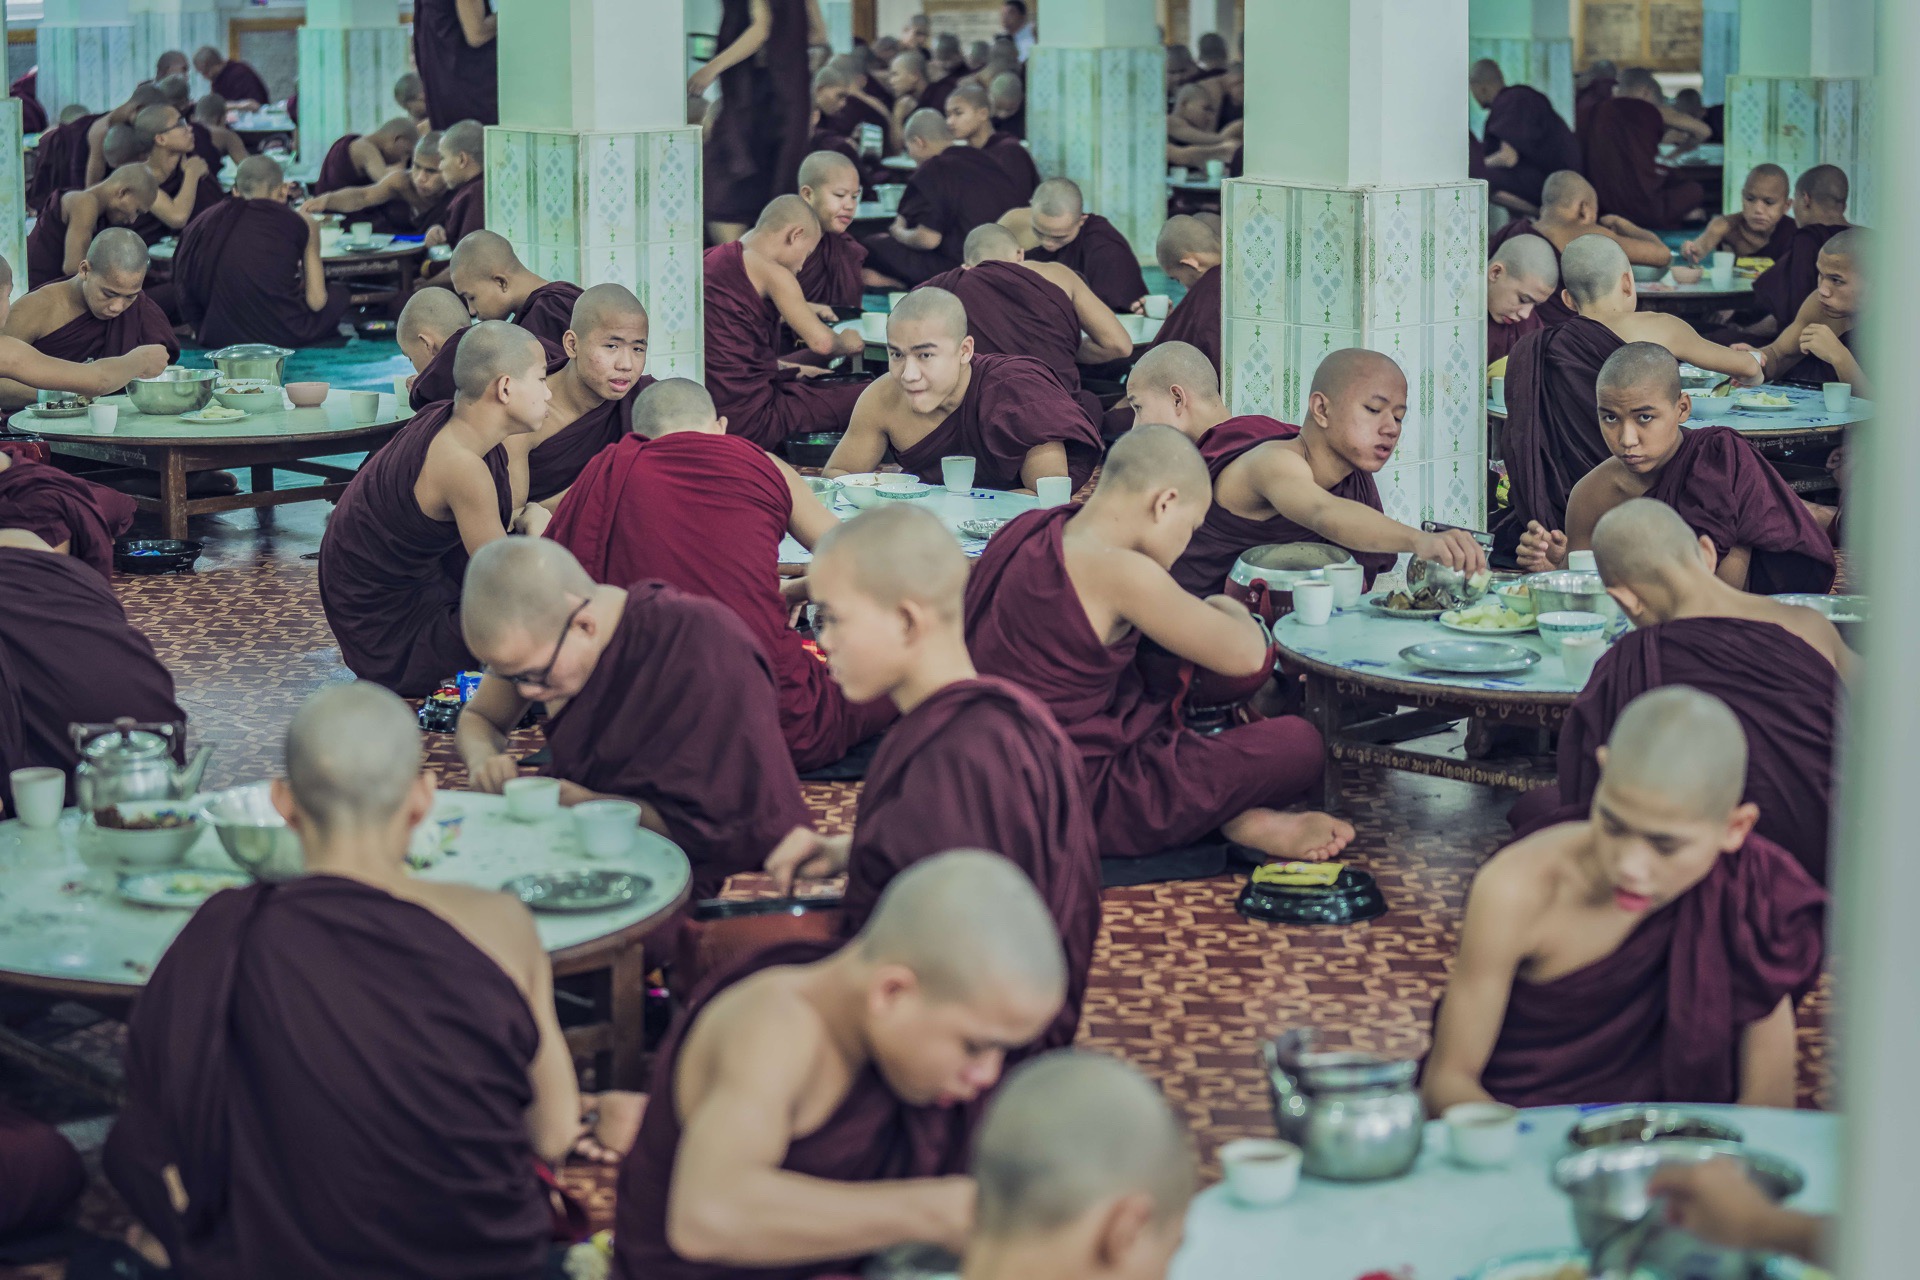 与有些国家的僧人吃素不同，在缅甸僧人是可以吃荤的，一般情况下化缘到什么就吃什么。所以僧人什么都吃，鸡